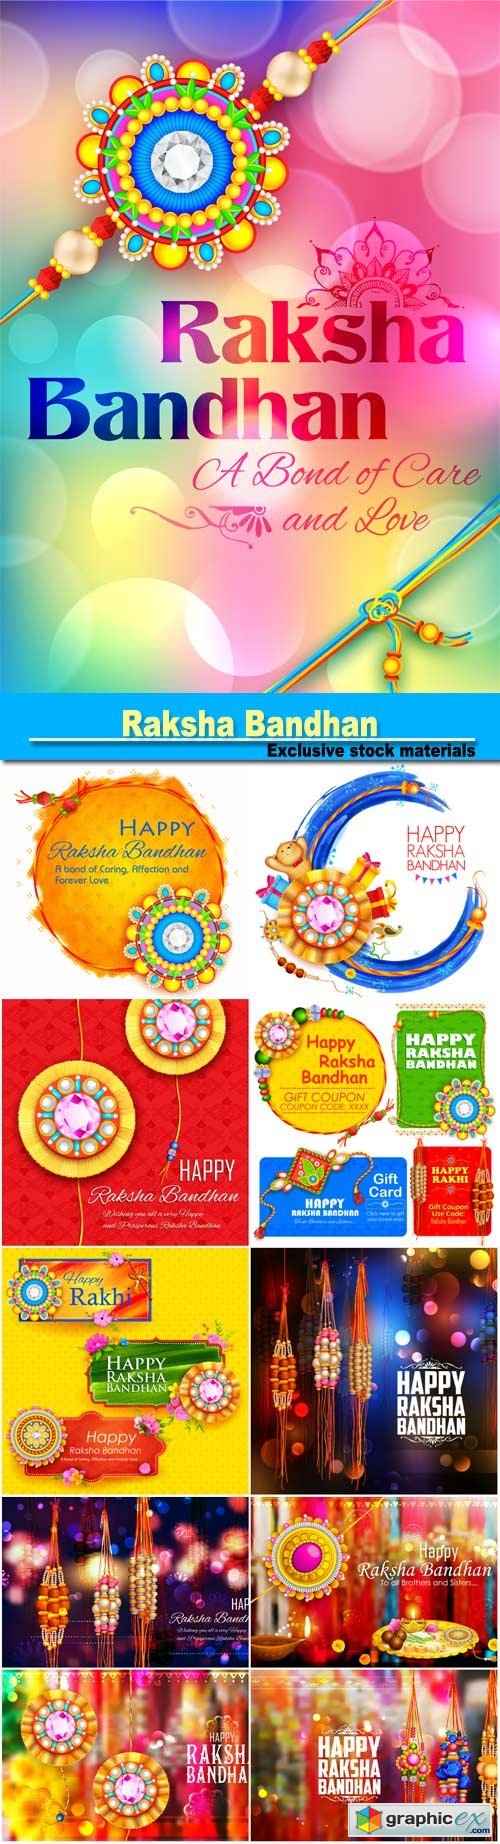 Raksha Bandhan, Indian festival for brother and sister bonding celebration